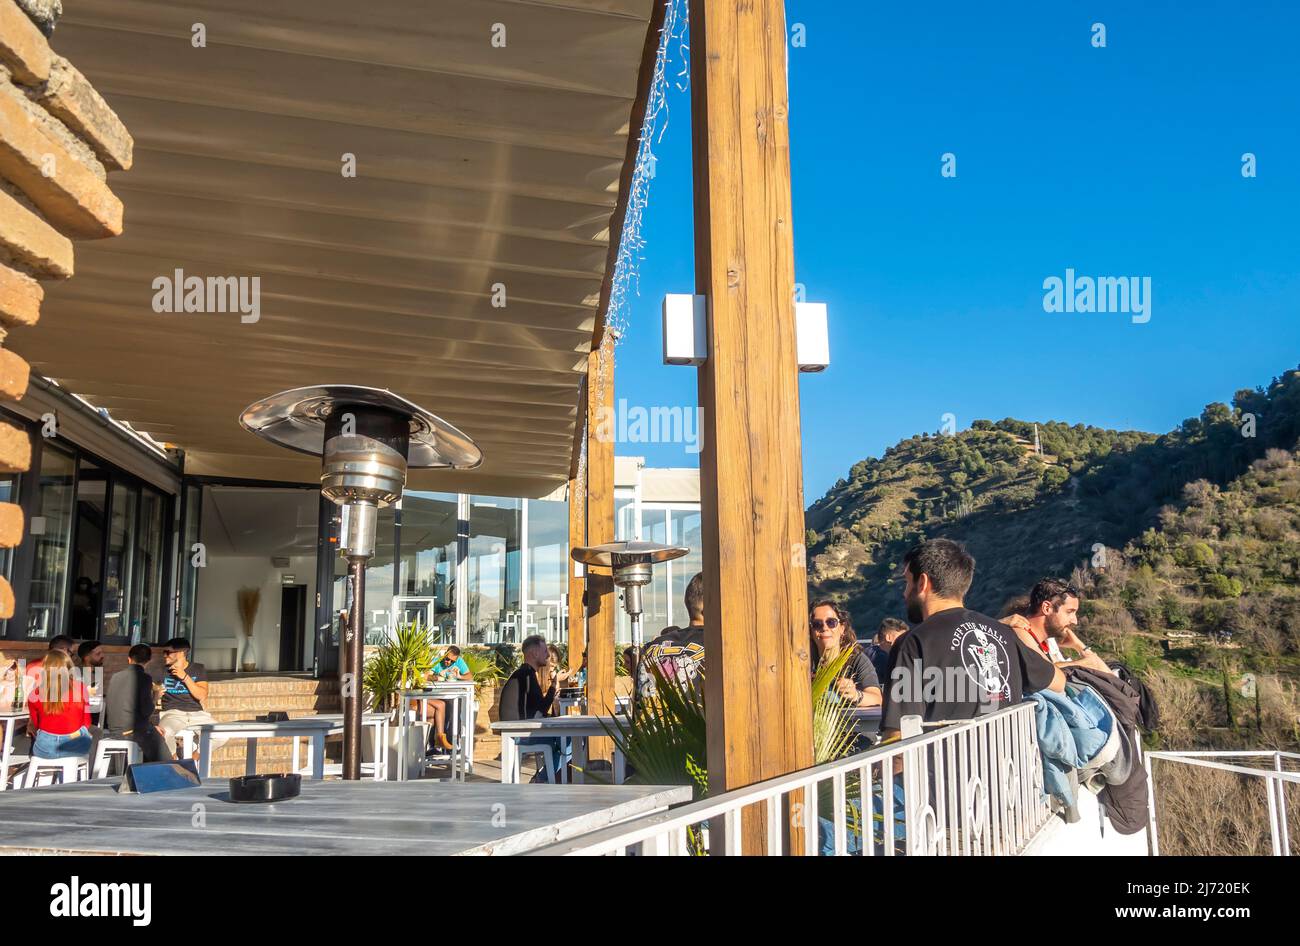 Terrasse im Freien in Albaizin Granada Café mit Touristen, post-covid Reisen und Essen an historischer Stelle, Wahrzeichen in Andalusien, Spanien Stockfoto